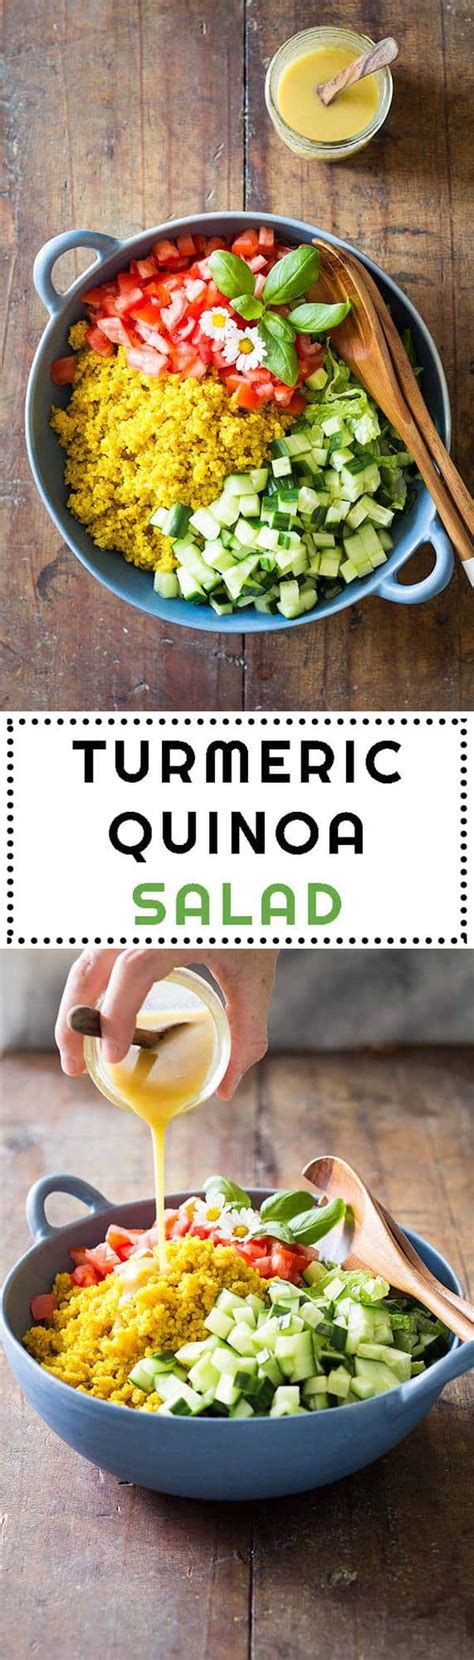 Turmeric Quinoa Salad Green Healthy Cooking